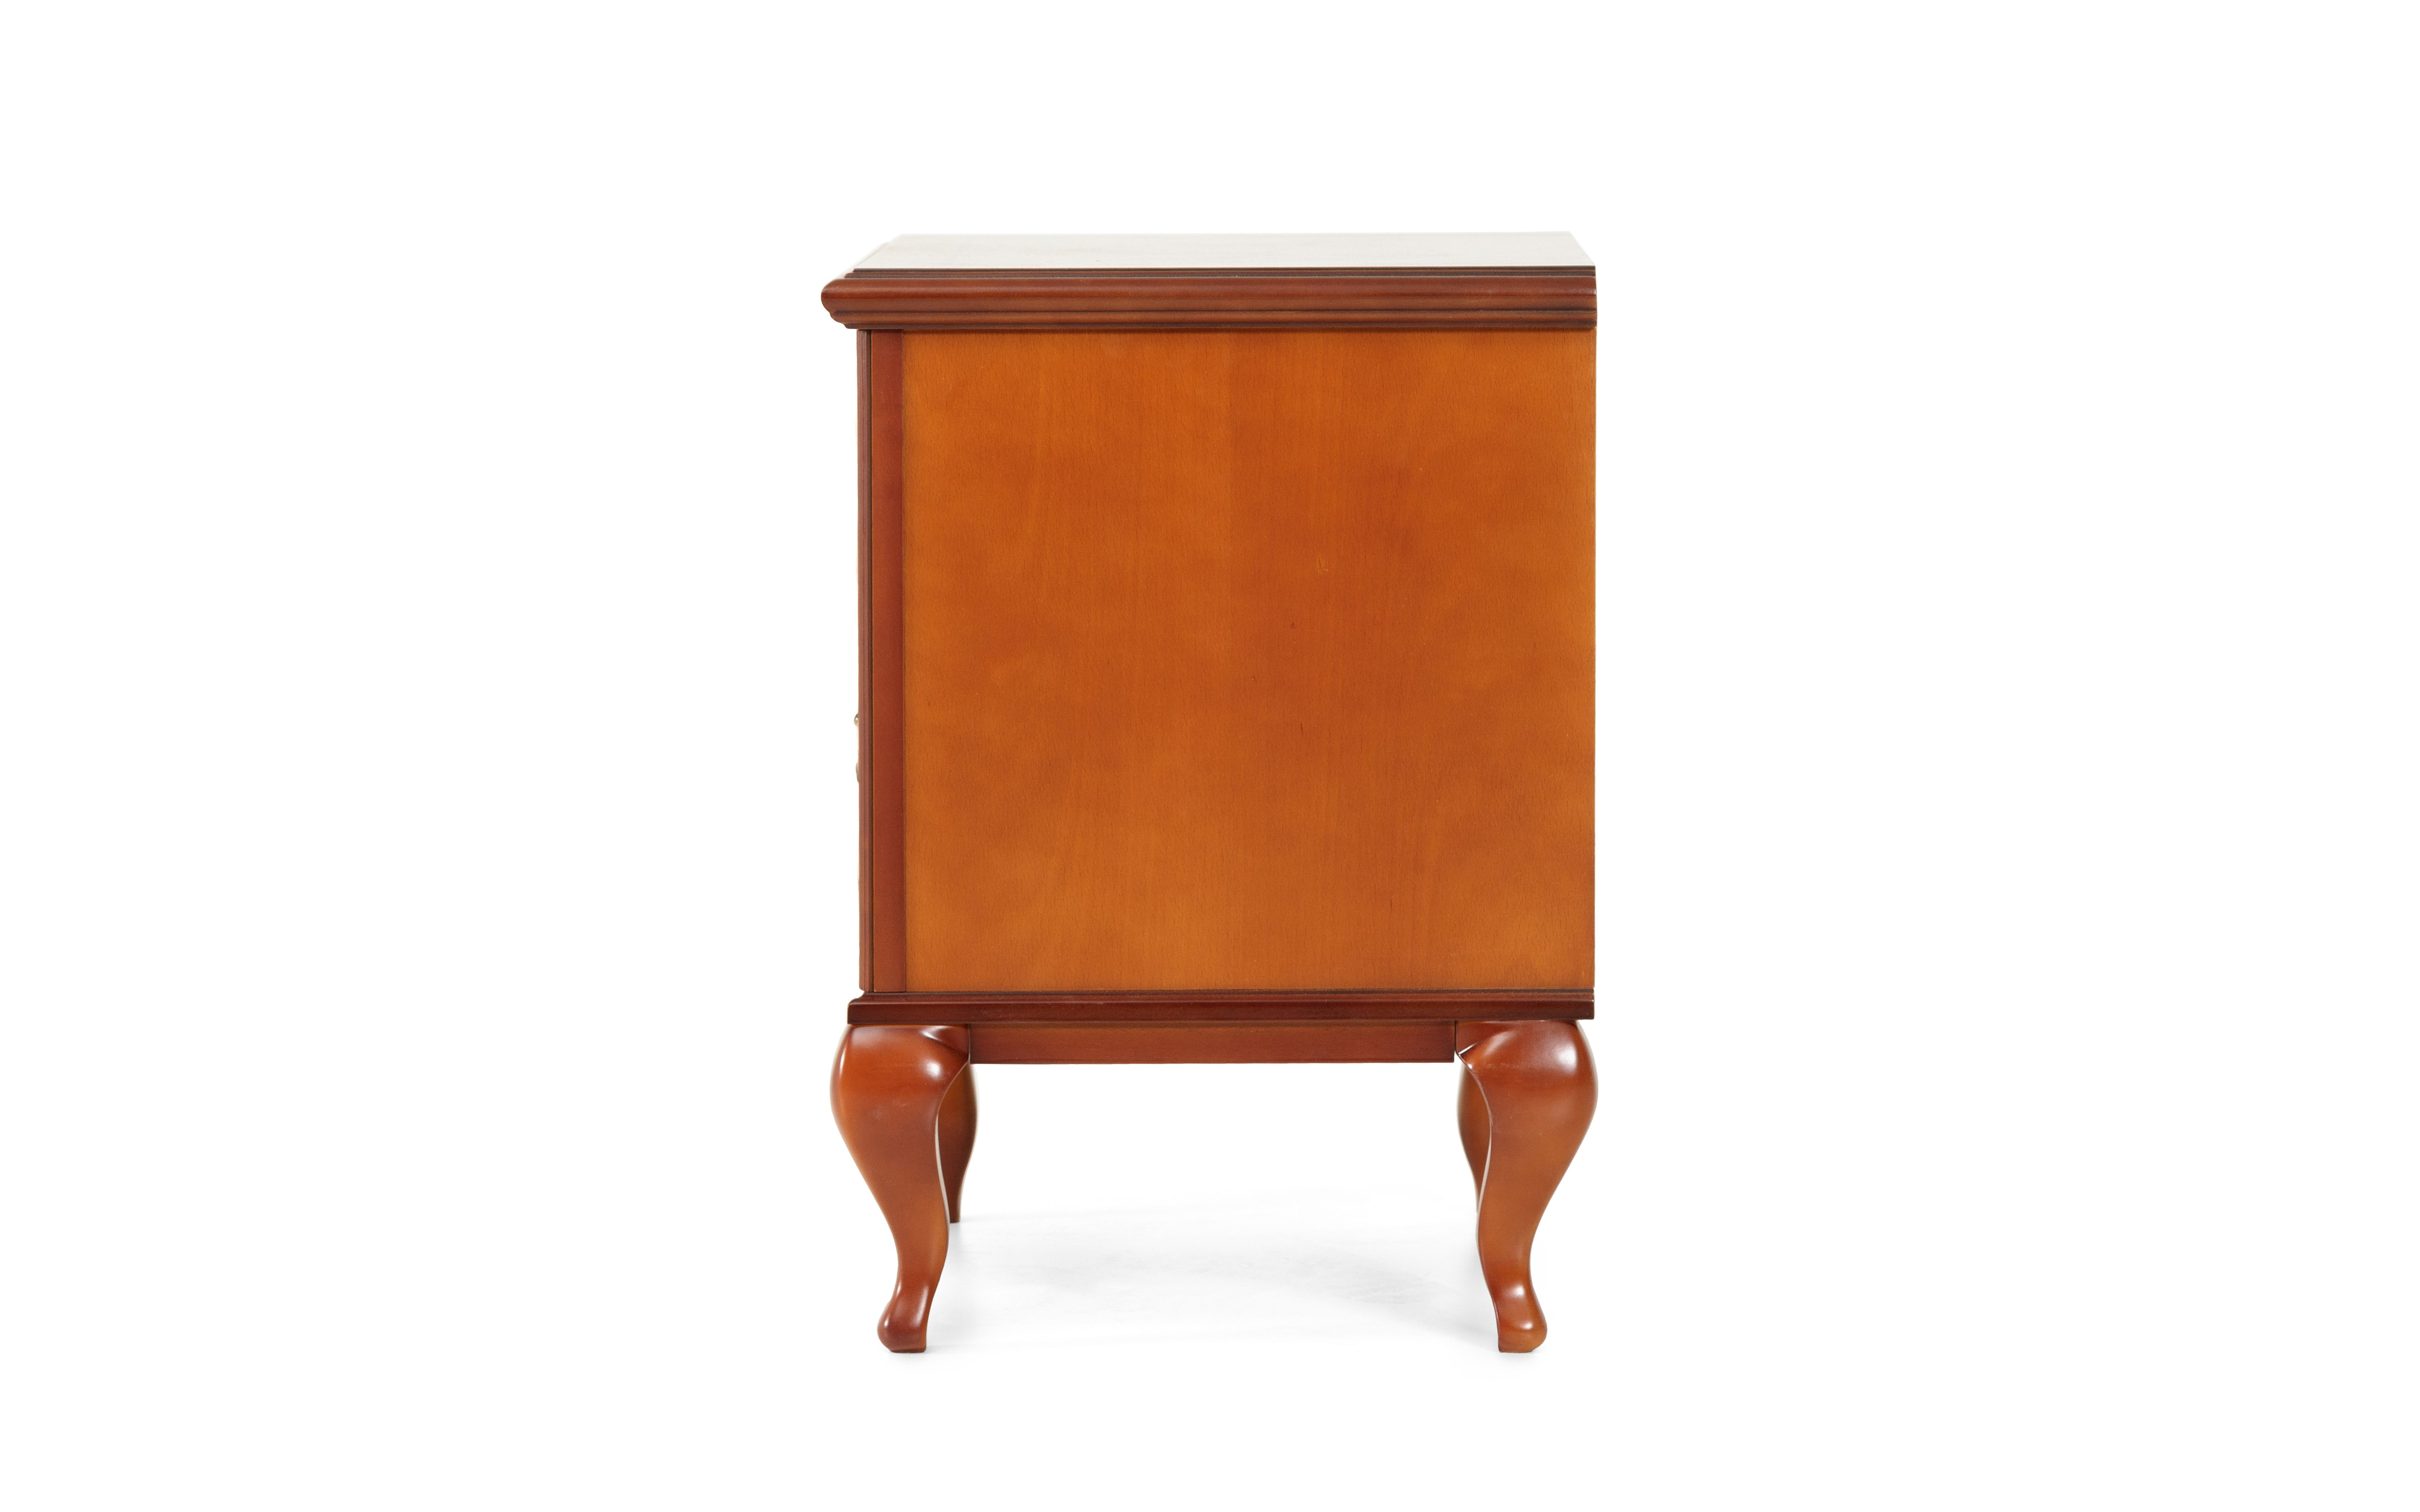 Тумбочка прикроватная Timber Неаполь, 57x42x59 см, цвет: янтарь (Т-521/Y)Т-521